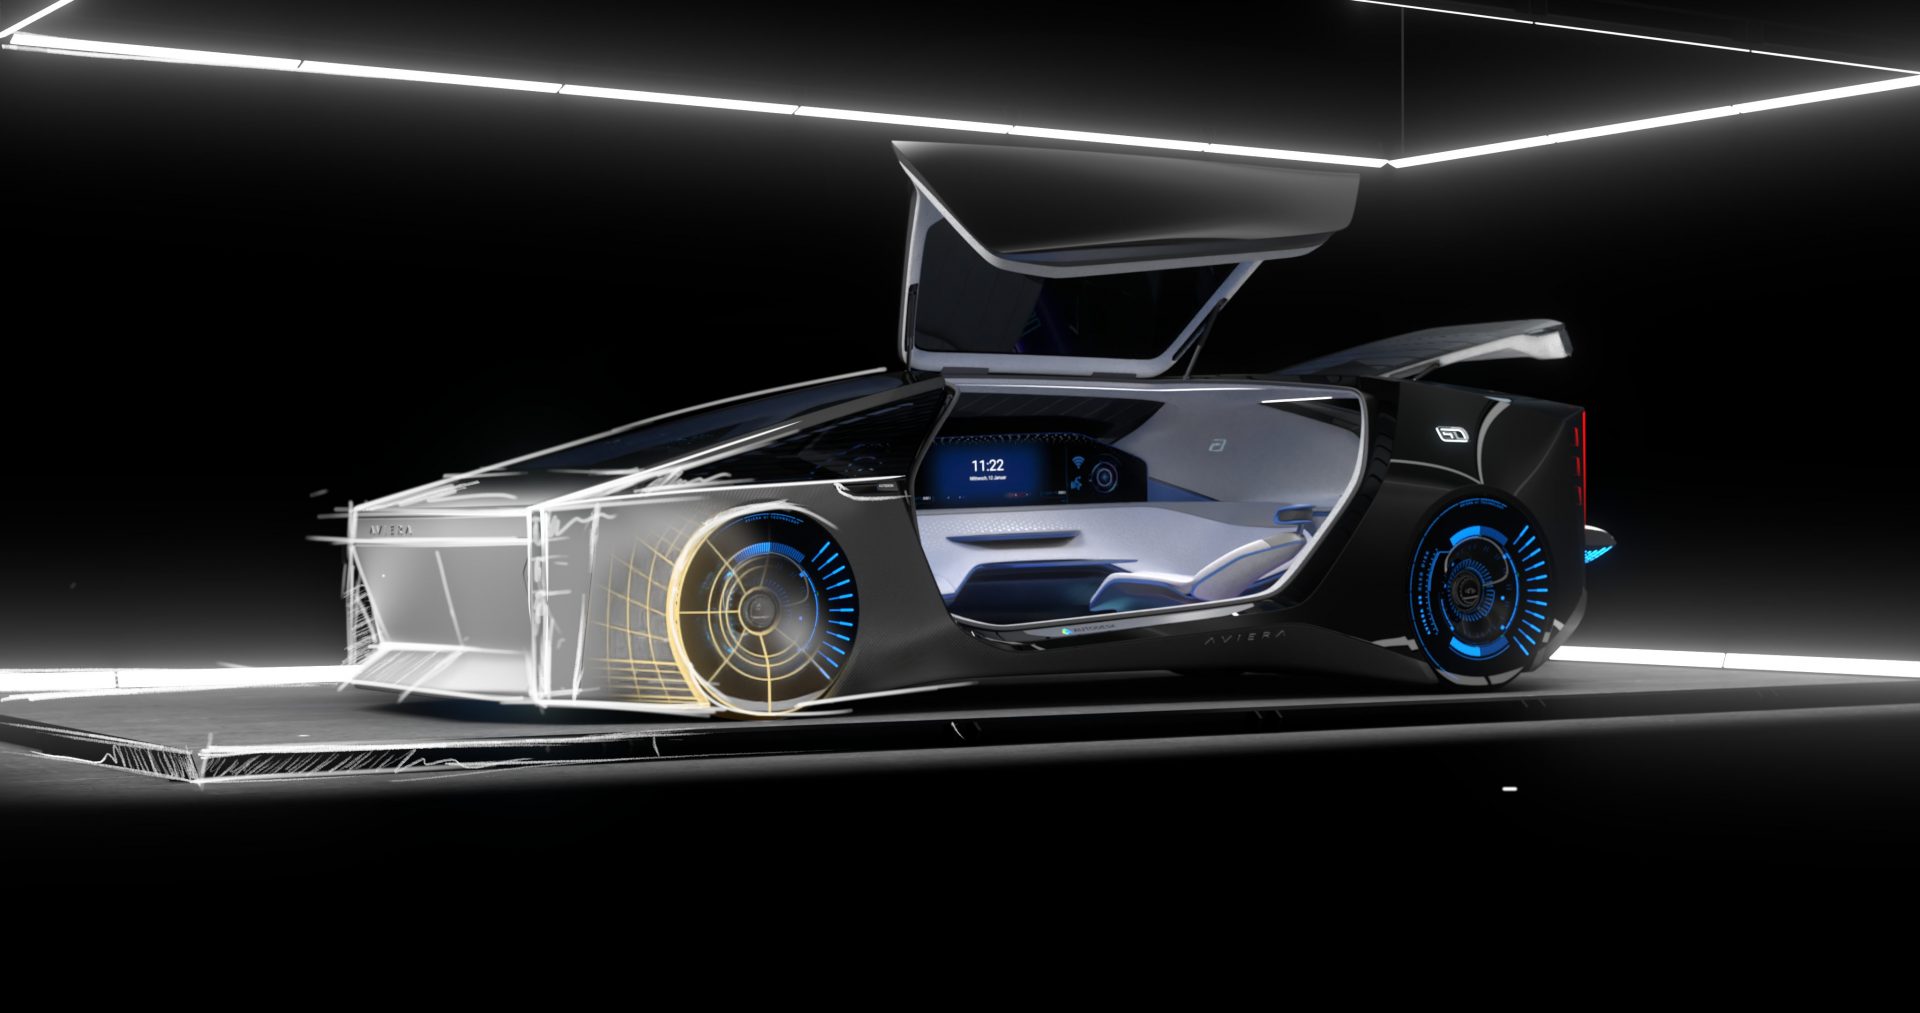 Car Design News “Car Design Dialogues 2022 – Americas Virtual Event”